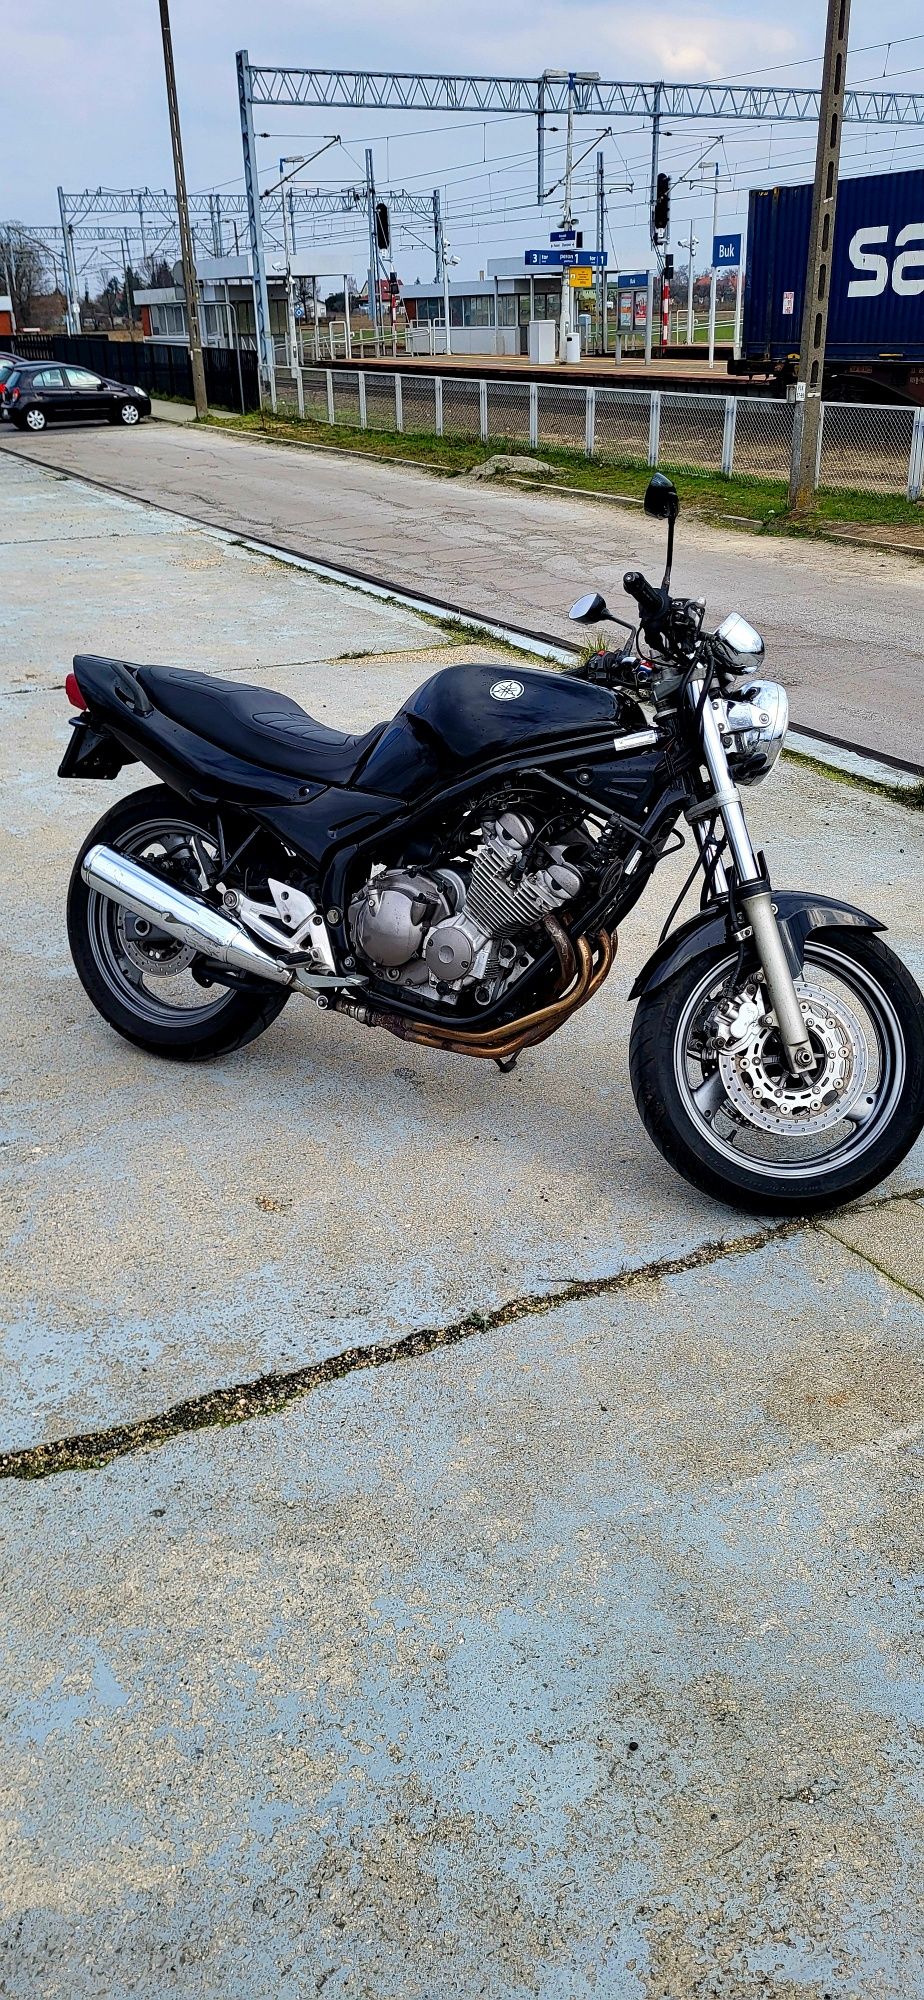 Motocykl Yamaha xj 600 S naked 2001r.